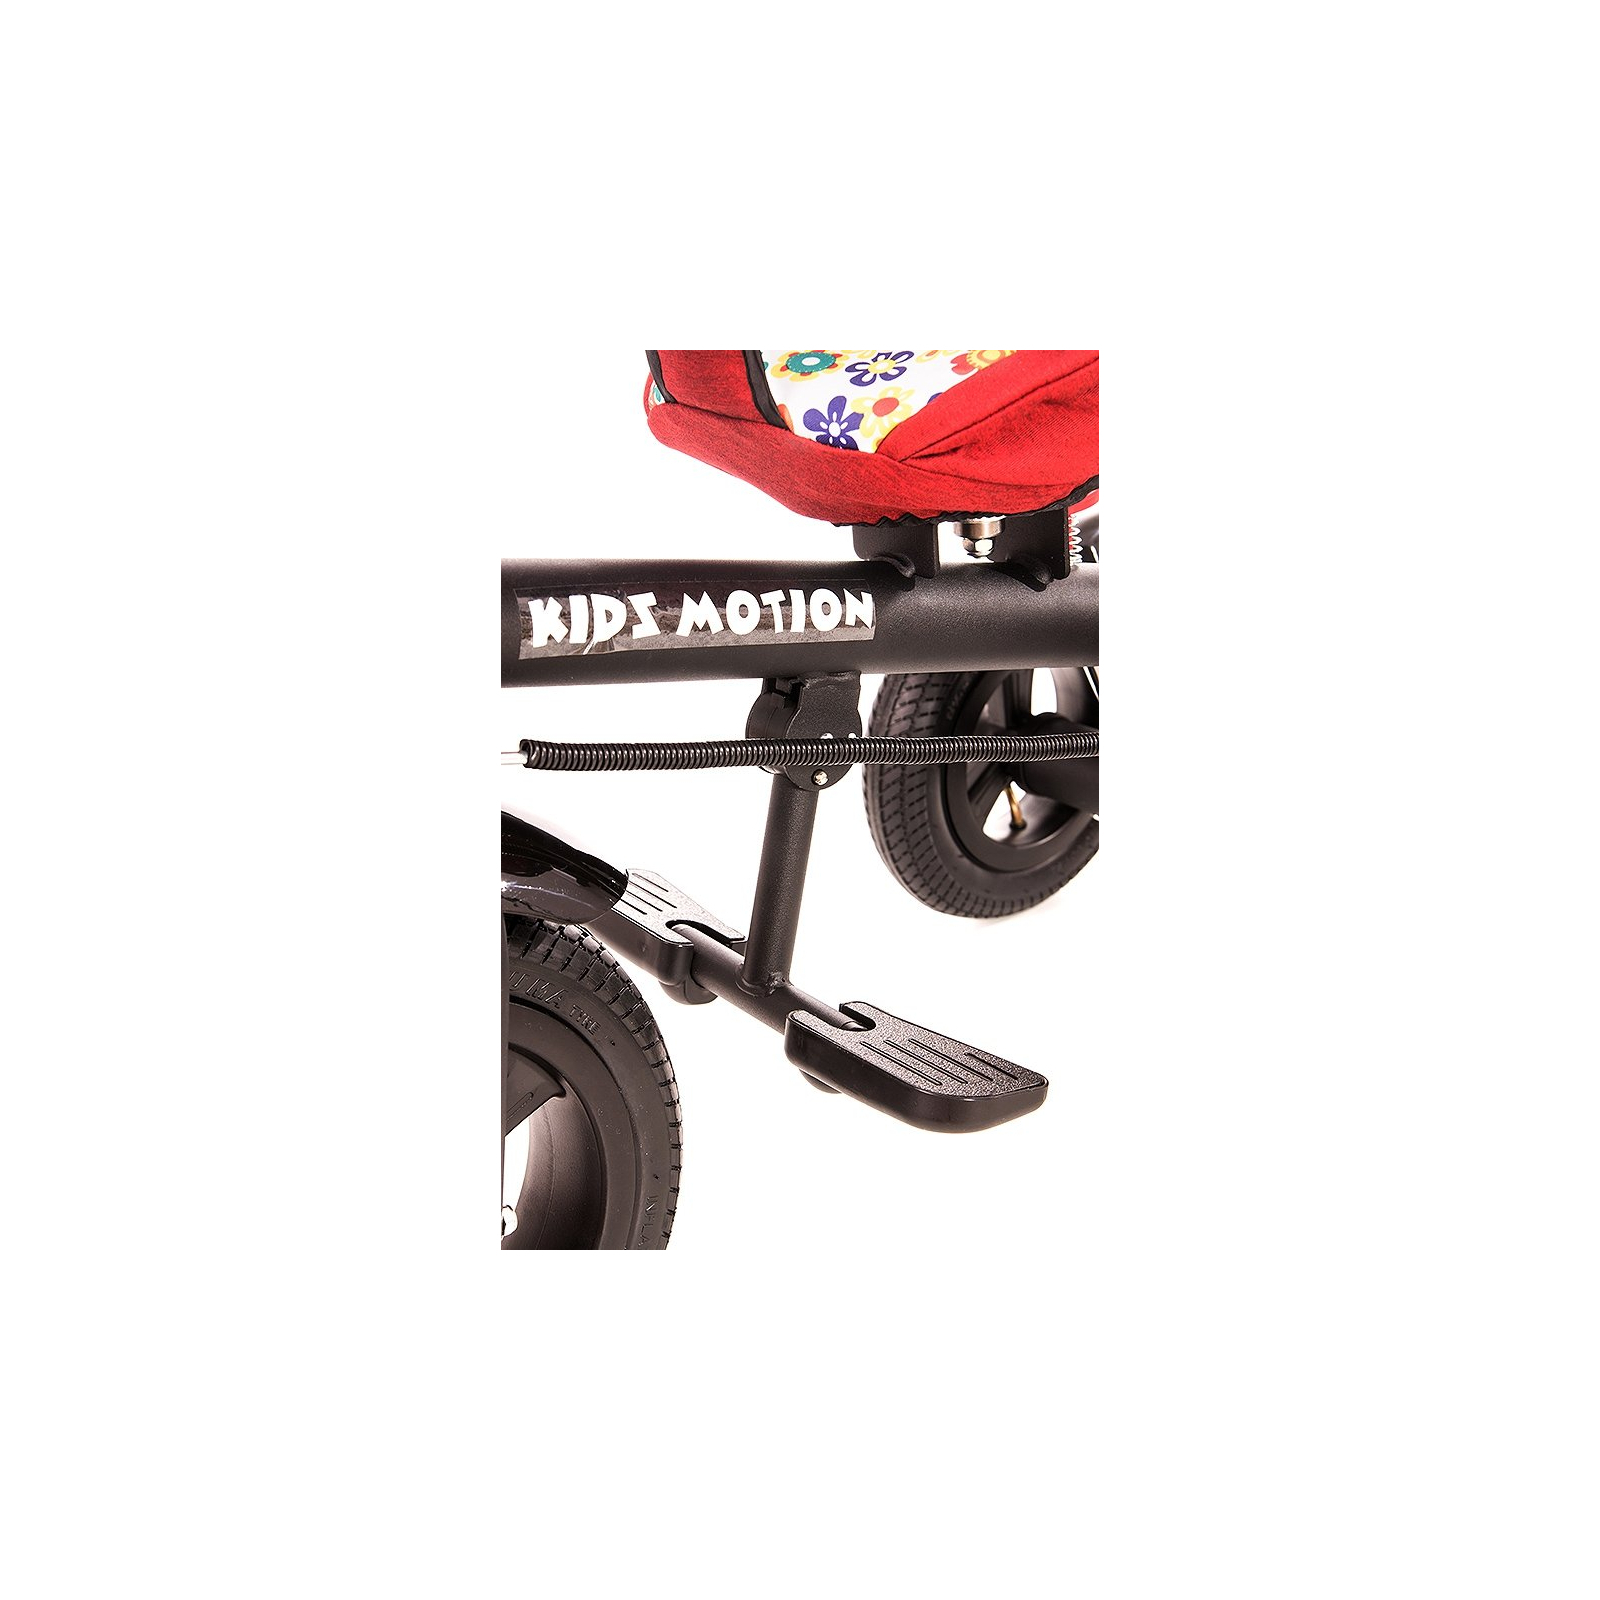 Детский велосипед KidzMotion Tobi Venture RED (115002/red) изображение 5